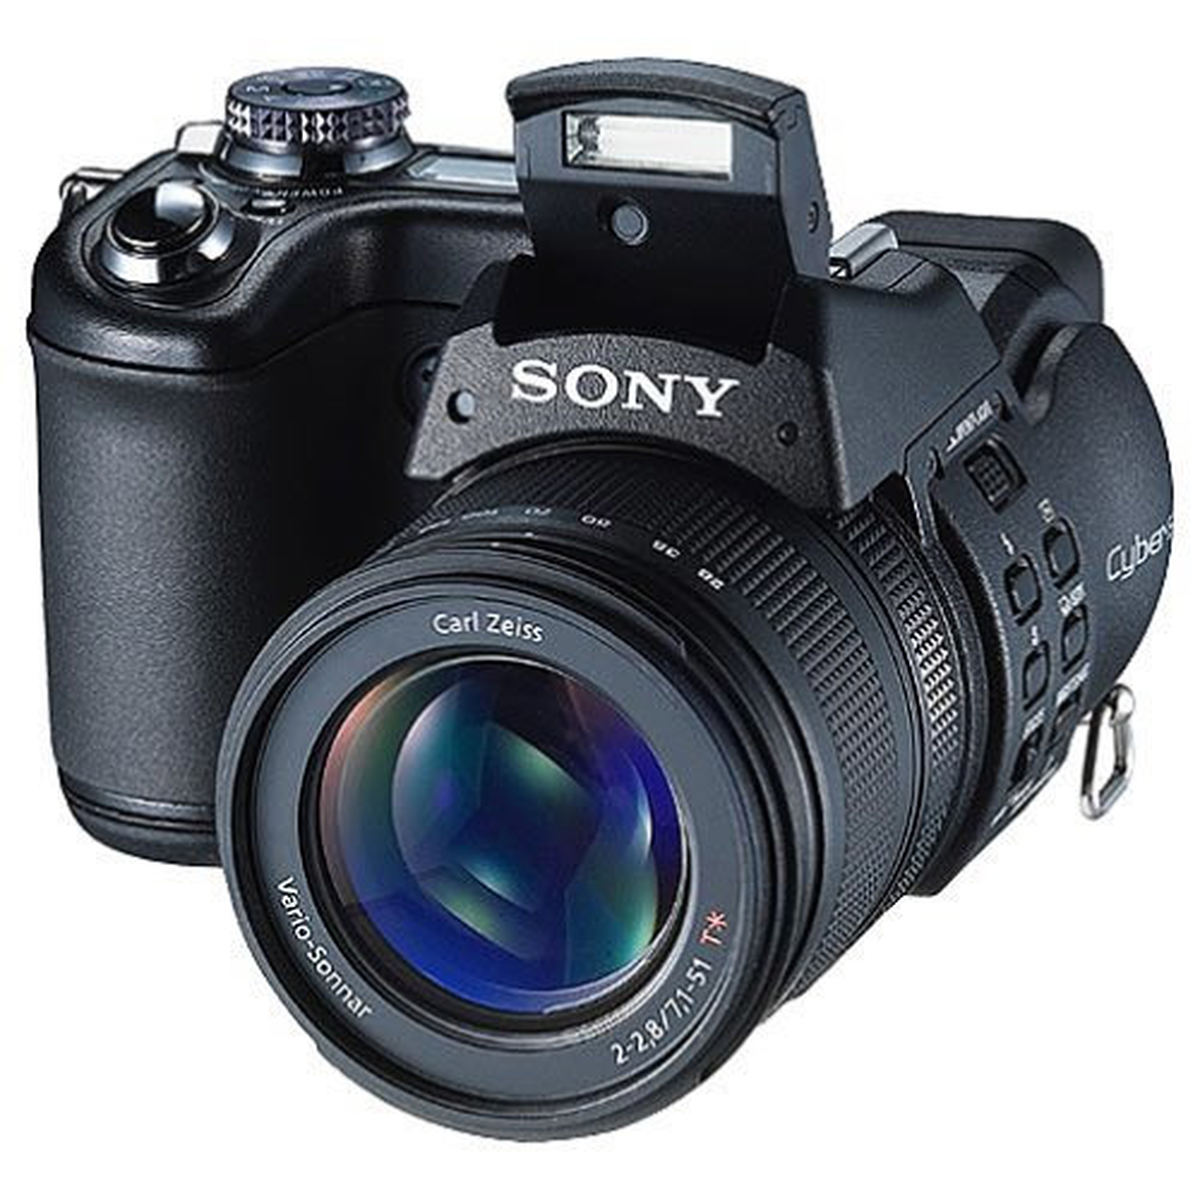 Sony Cyber-shot DSC-F828 : Caratteristiche e Opinioni | JuzaPhoto